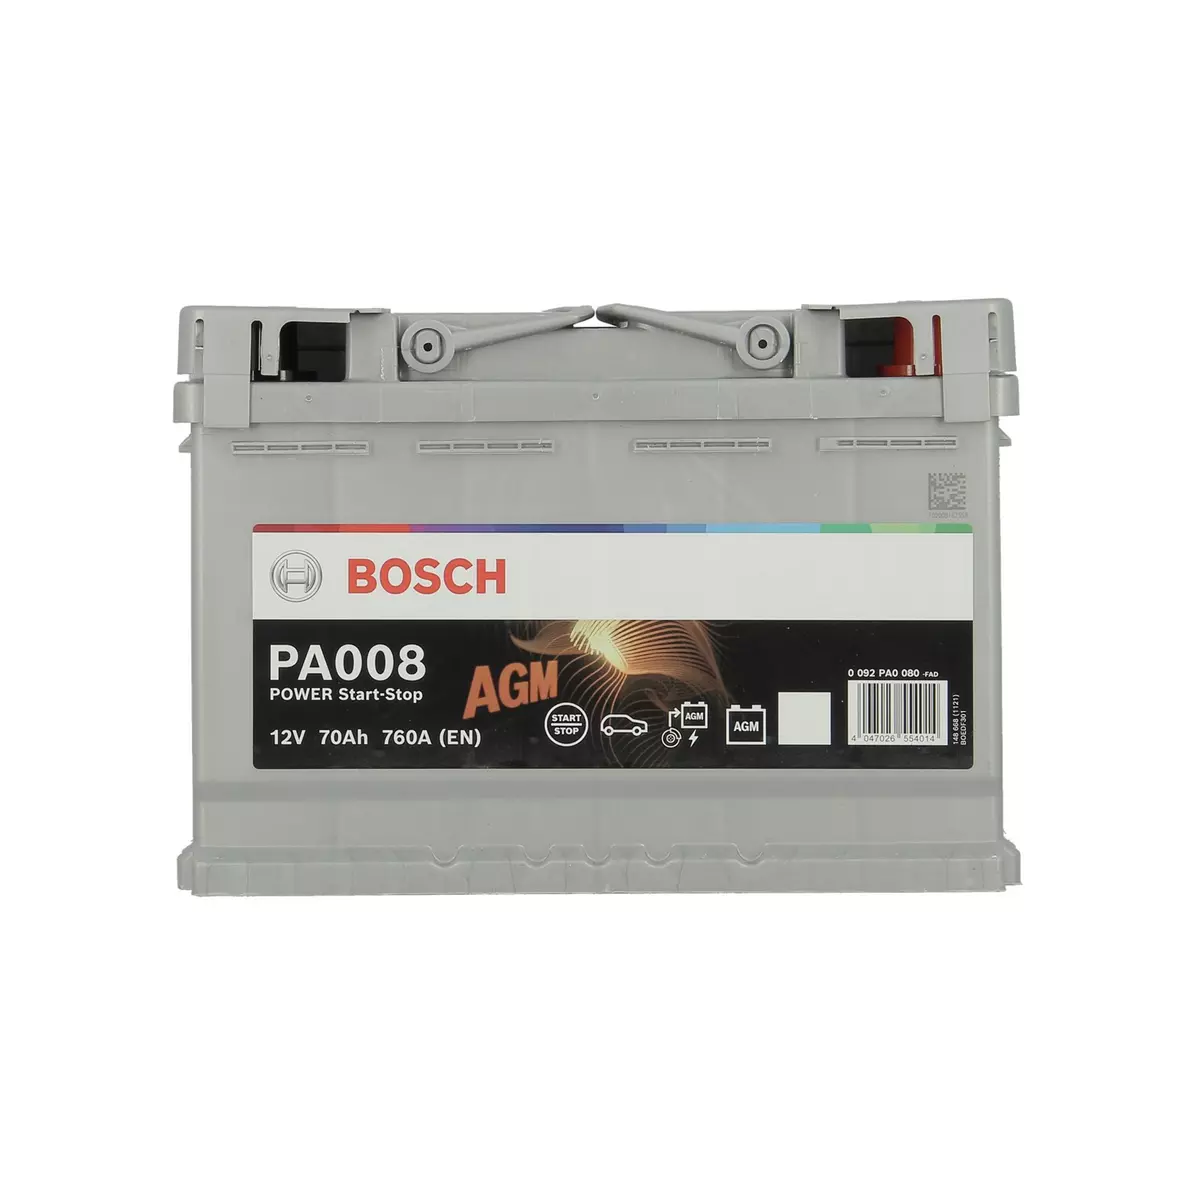 BOSCH Batterie pour voiture 70Ah 760A PA008